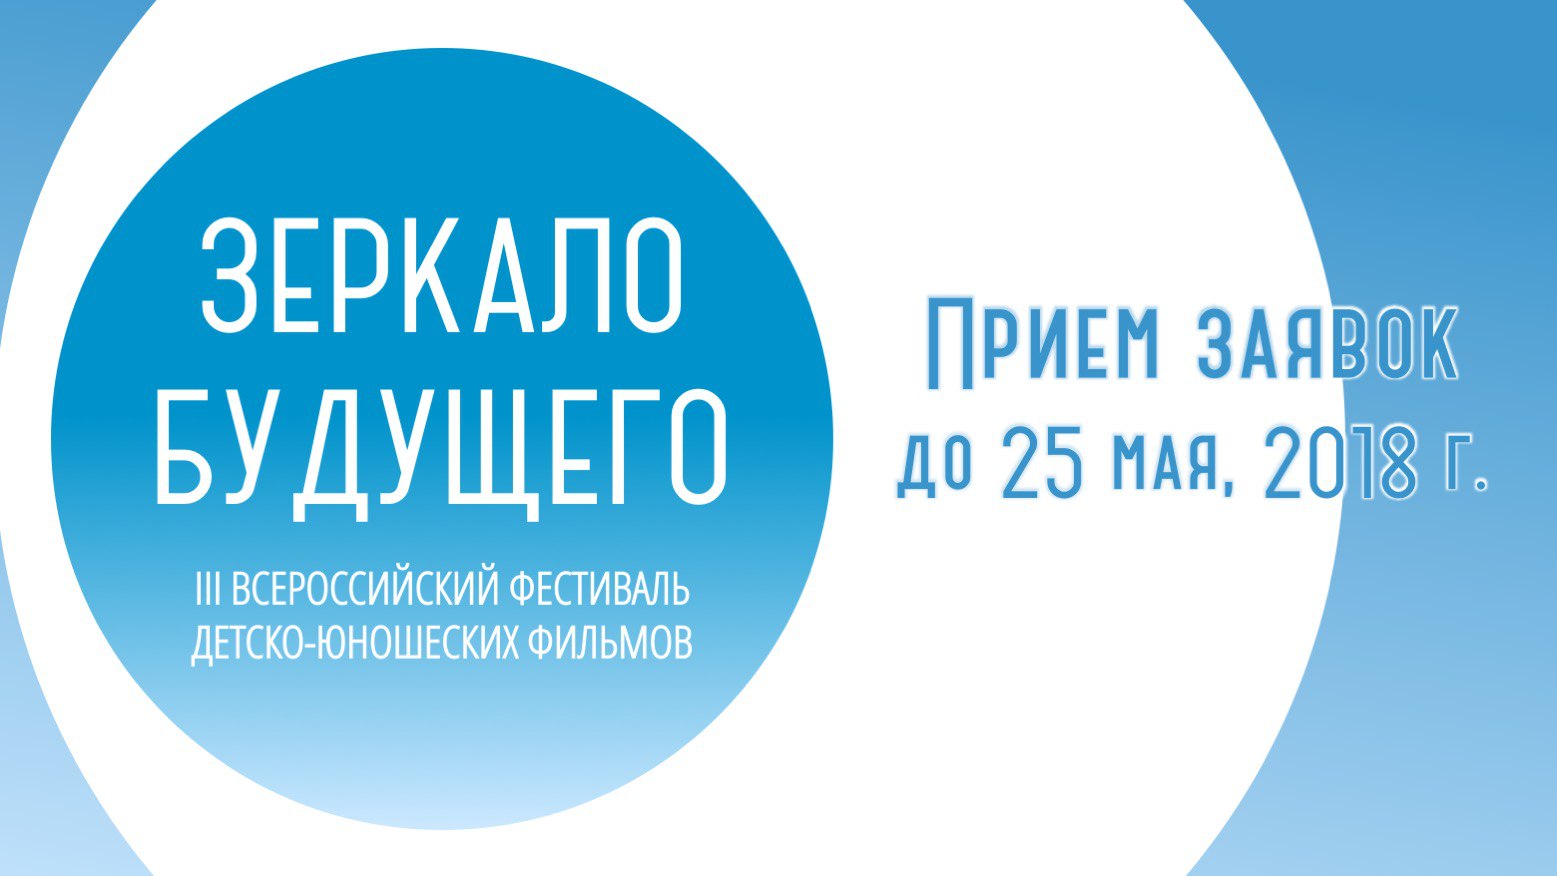 III Всероссийский фестиваль детско-юношеских фильмов «Зеркало Будущего» пройдет в Республике Крым в августе 2018 г.